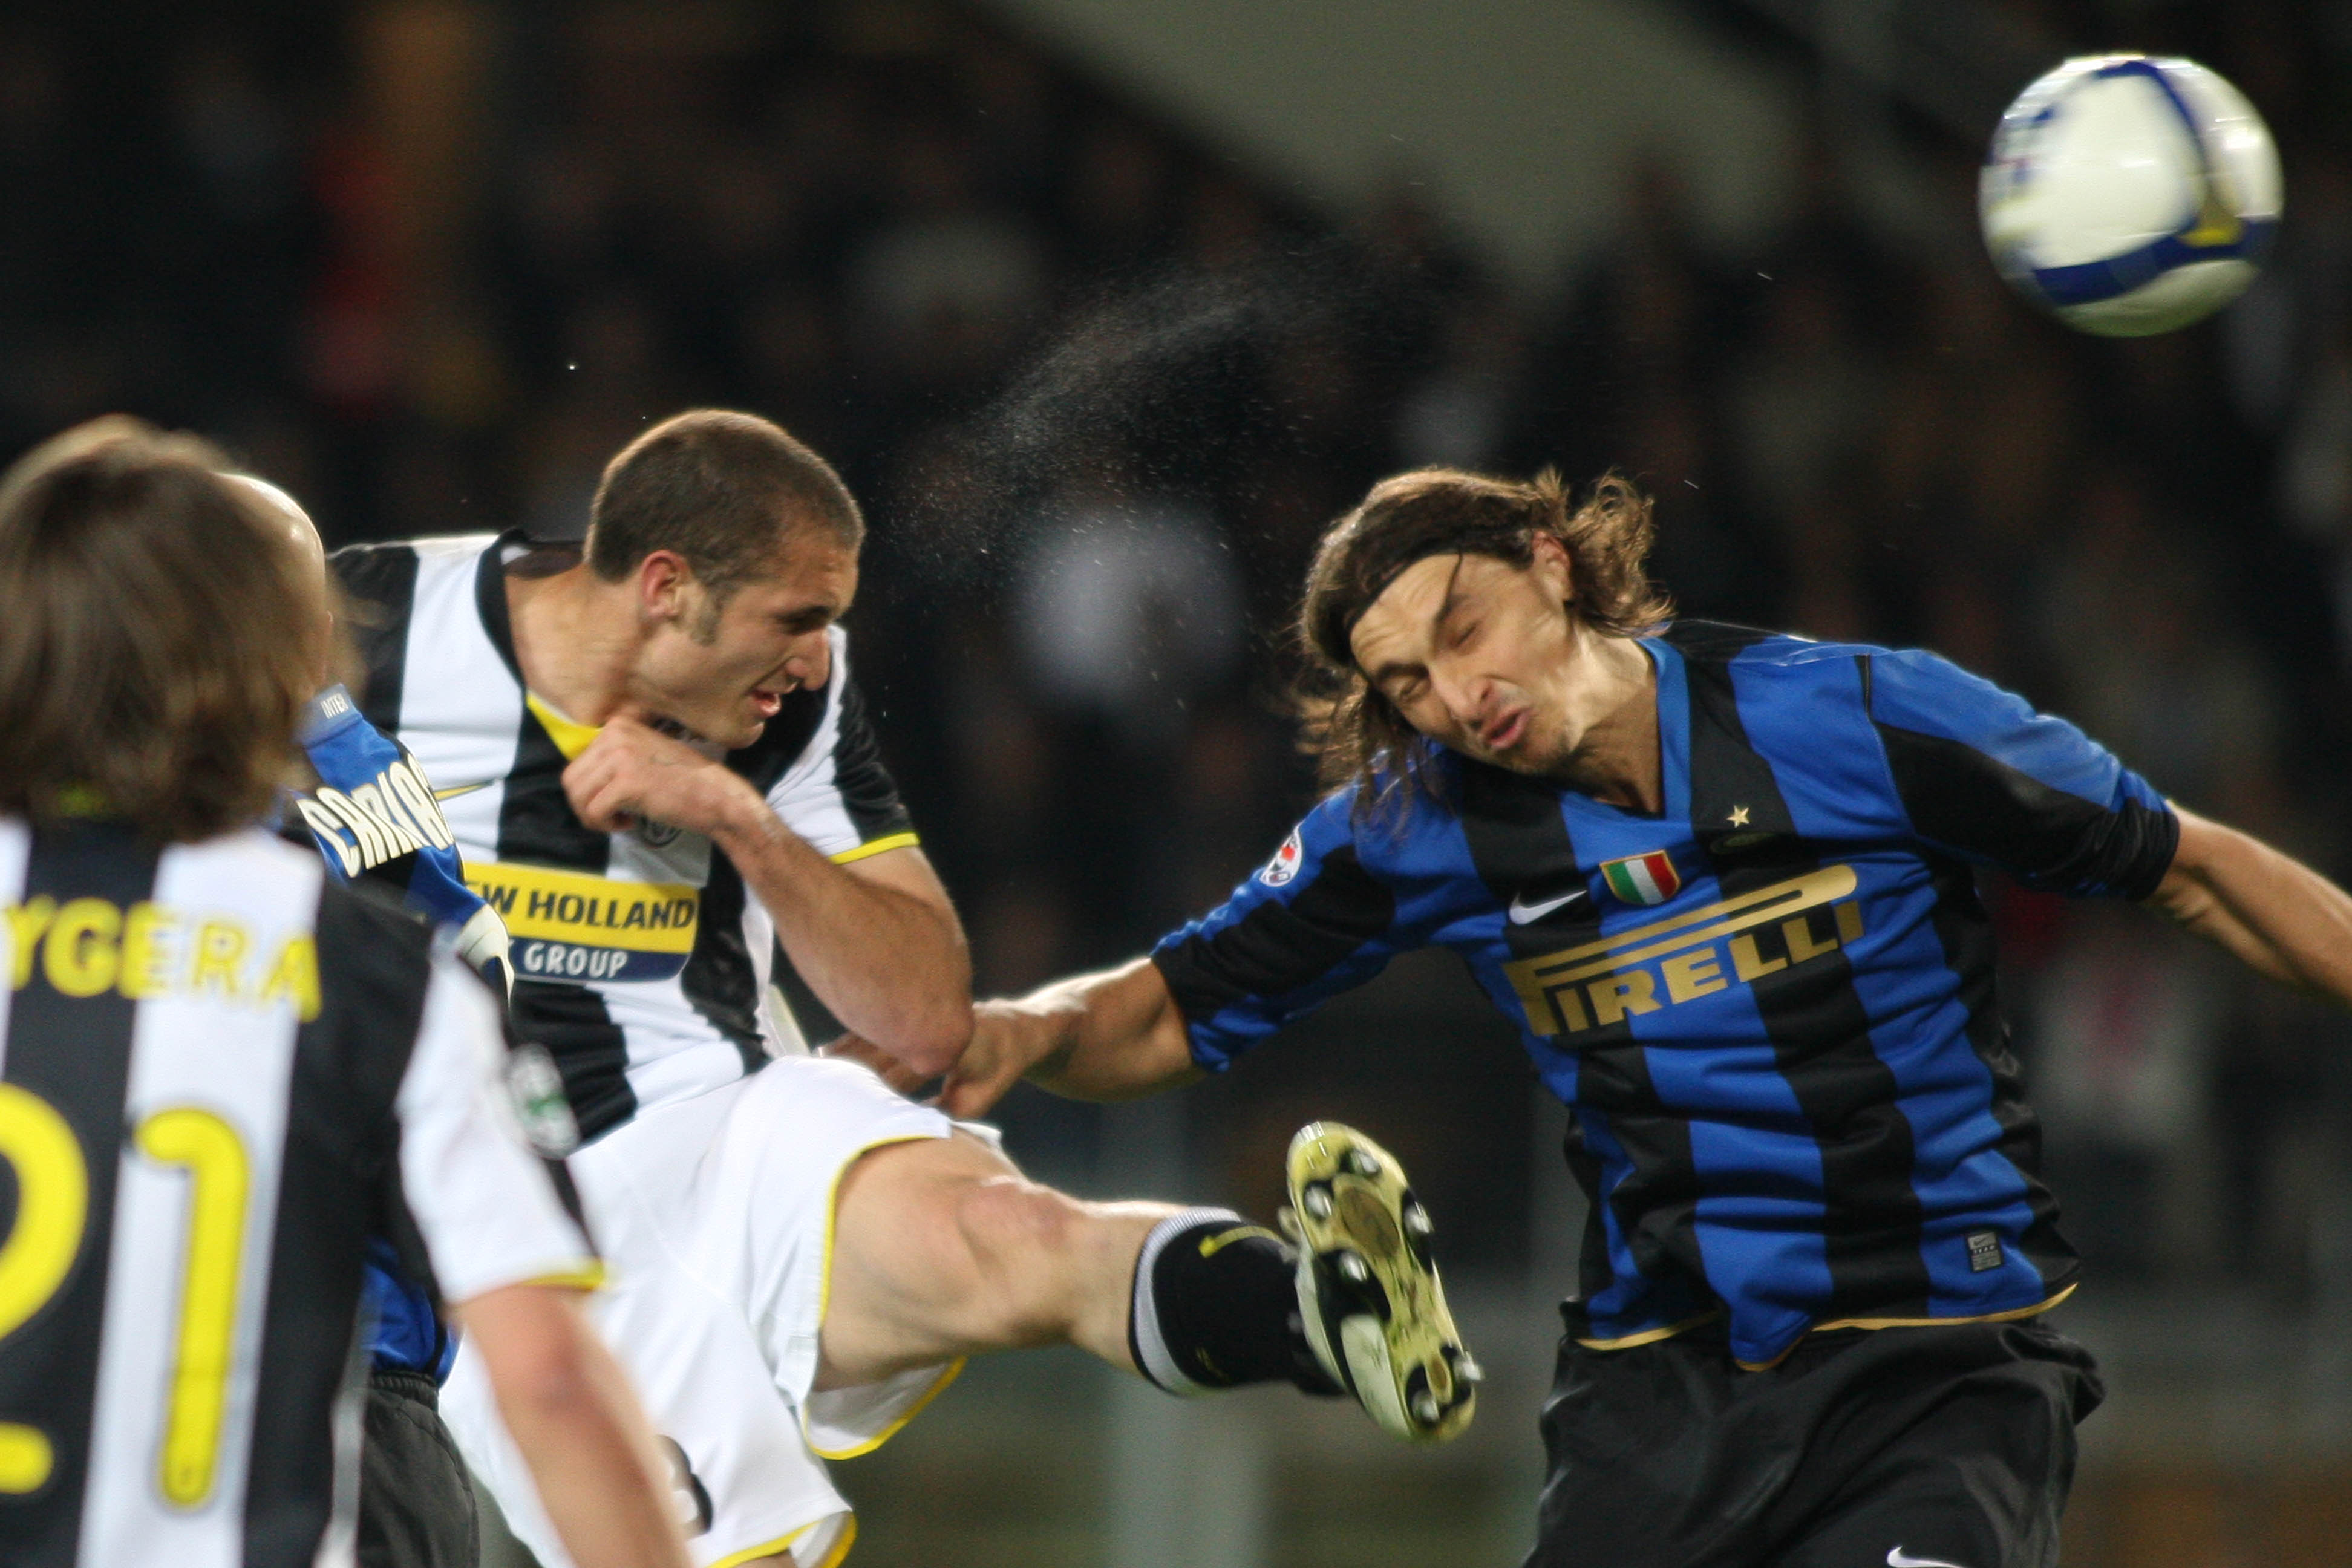 Medans Zlatan lämnade för Inter - och sen dess har det smällt rejält i närkamperna. 